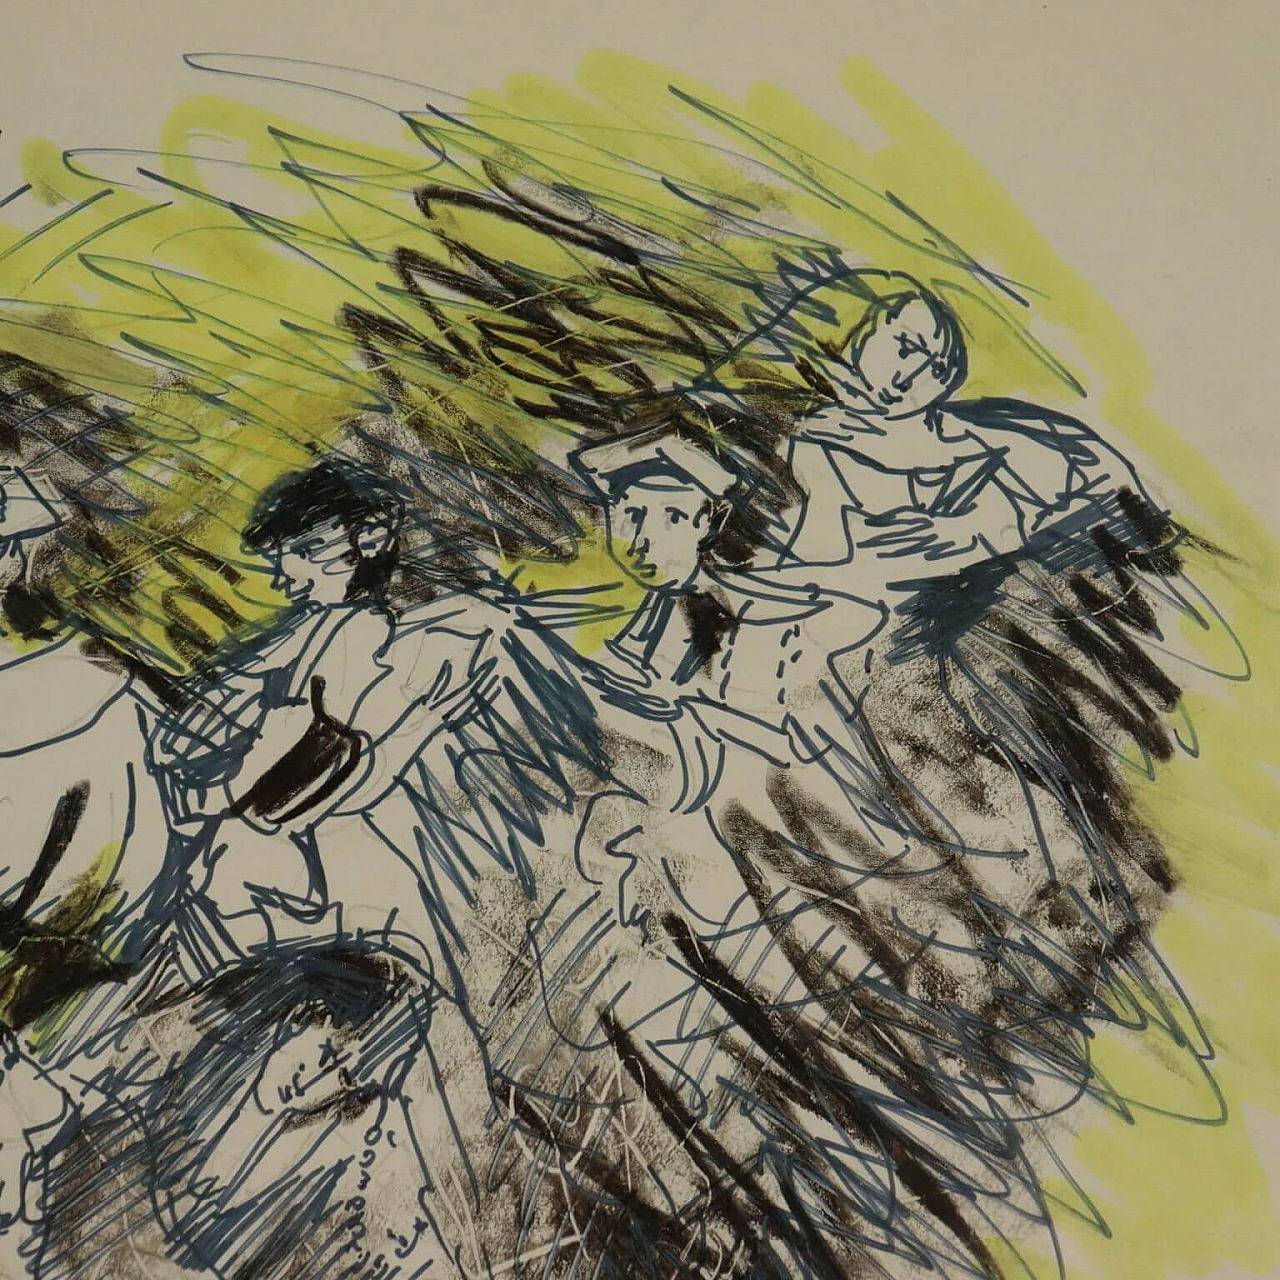 Remo Brindisi, Olocausto, disegno a tecnica mista su carta, 1989 6